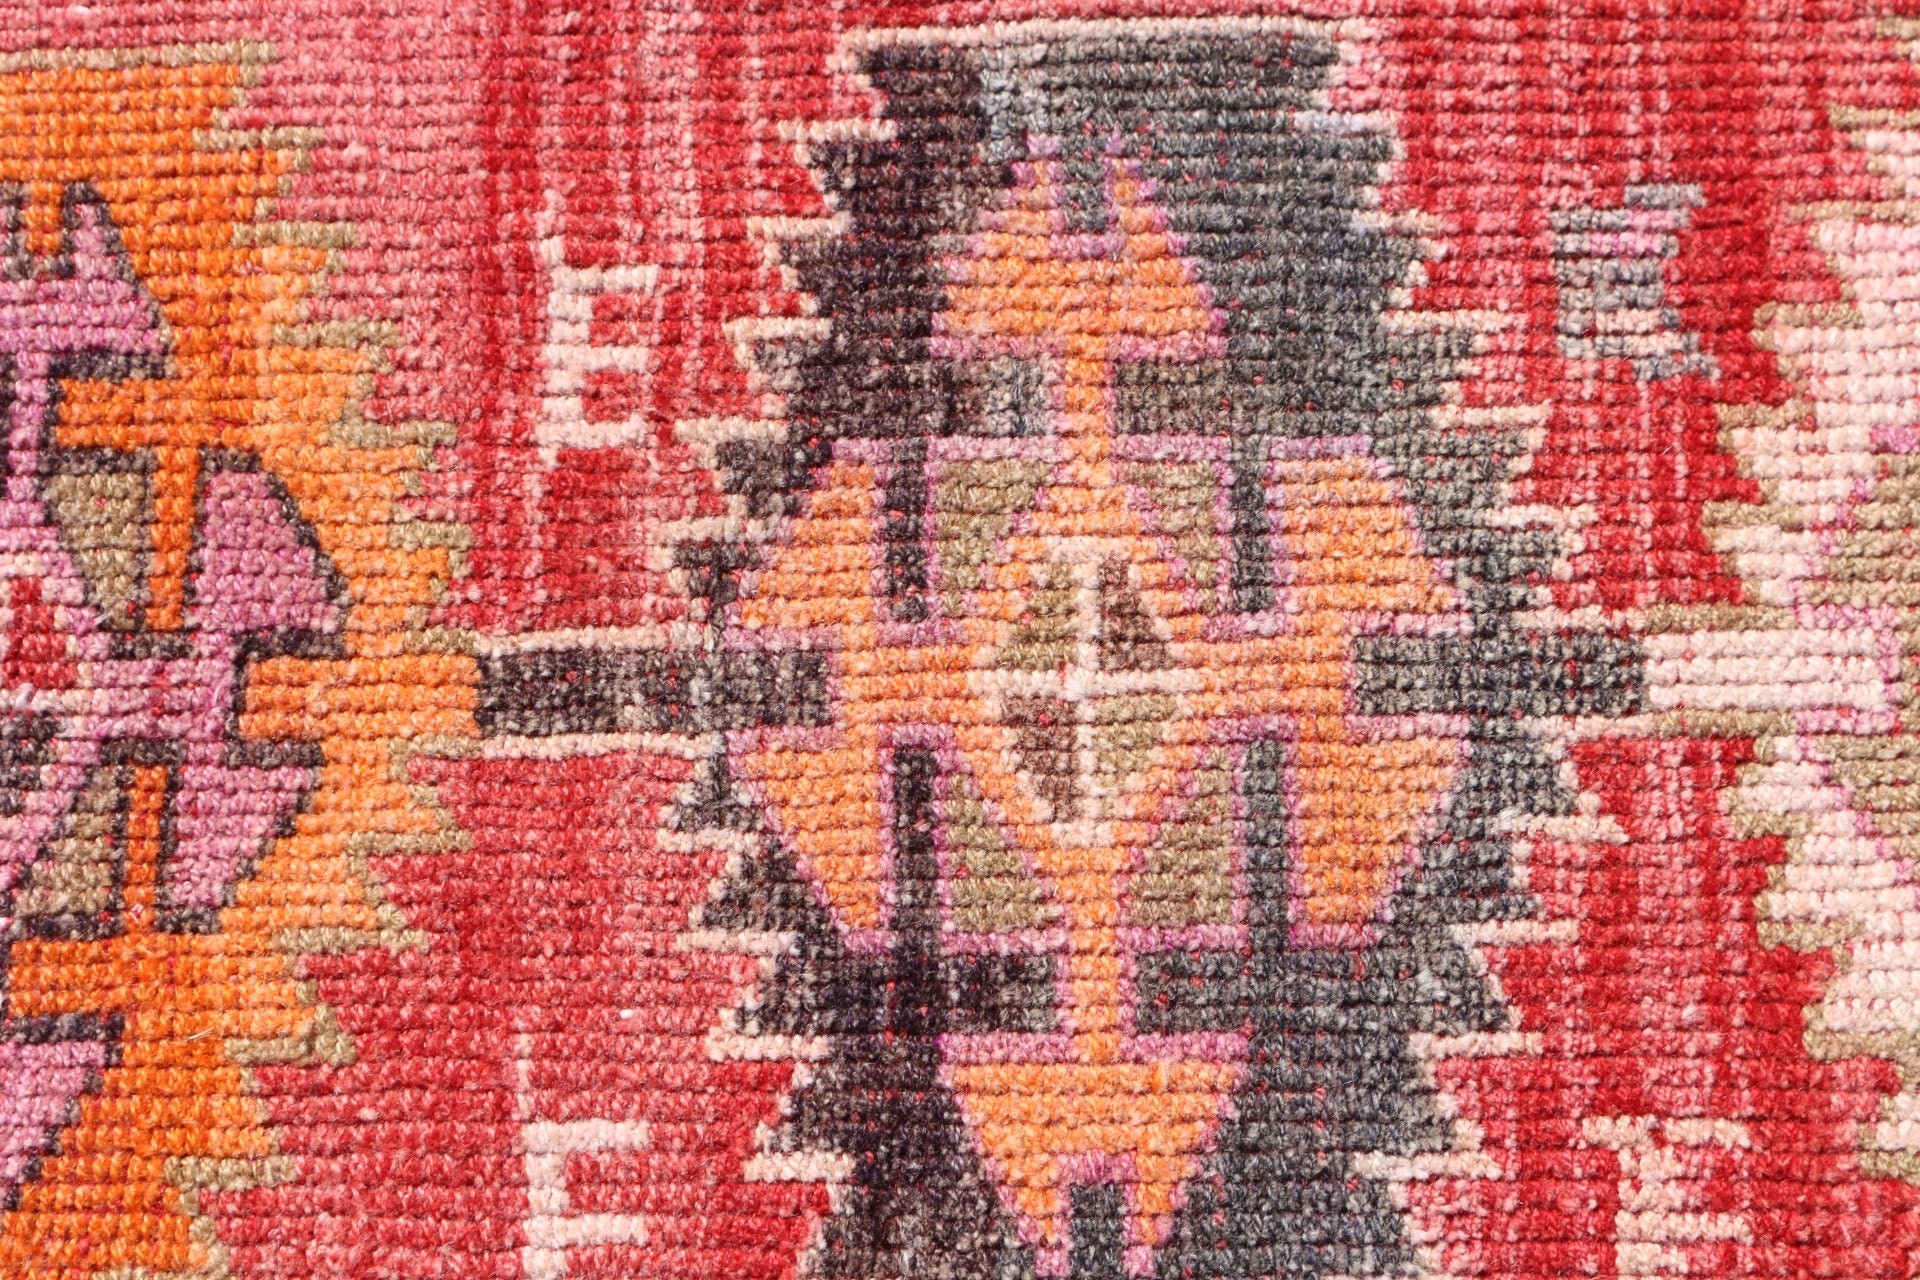 Red Moroccan Rugs, Corridor Rugs, Antique Rugs, 2.6x11.8 ft Runner Rugs, Moroccan Rugs, Pastel Rug, Vintage Rug, Hallway Rugs, Turkish Rug